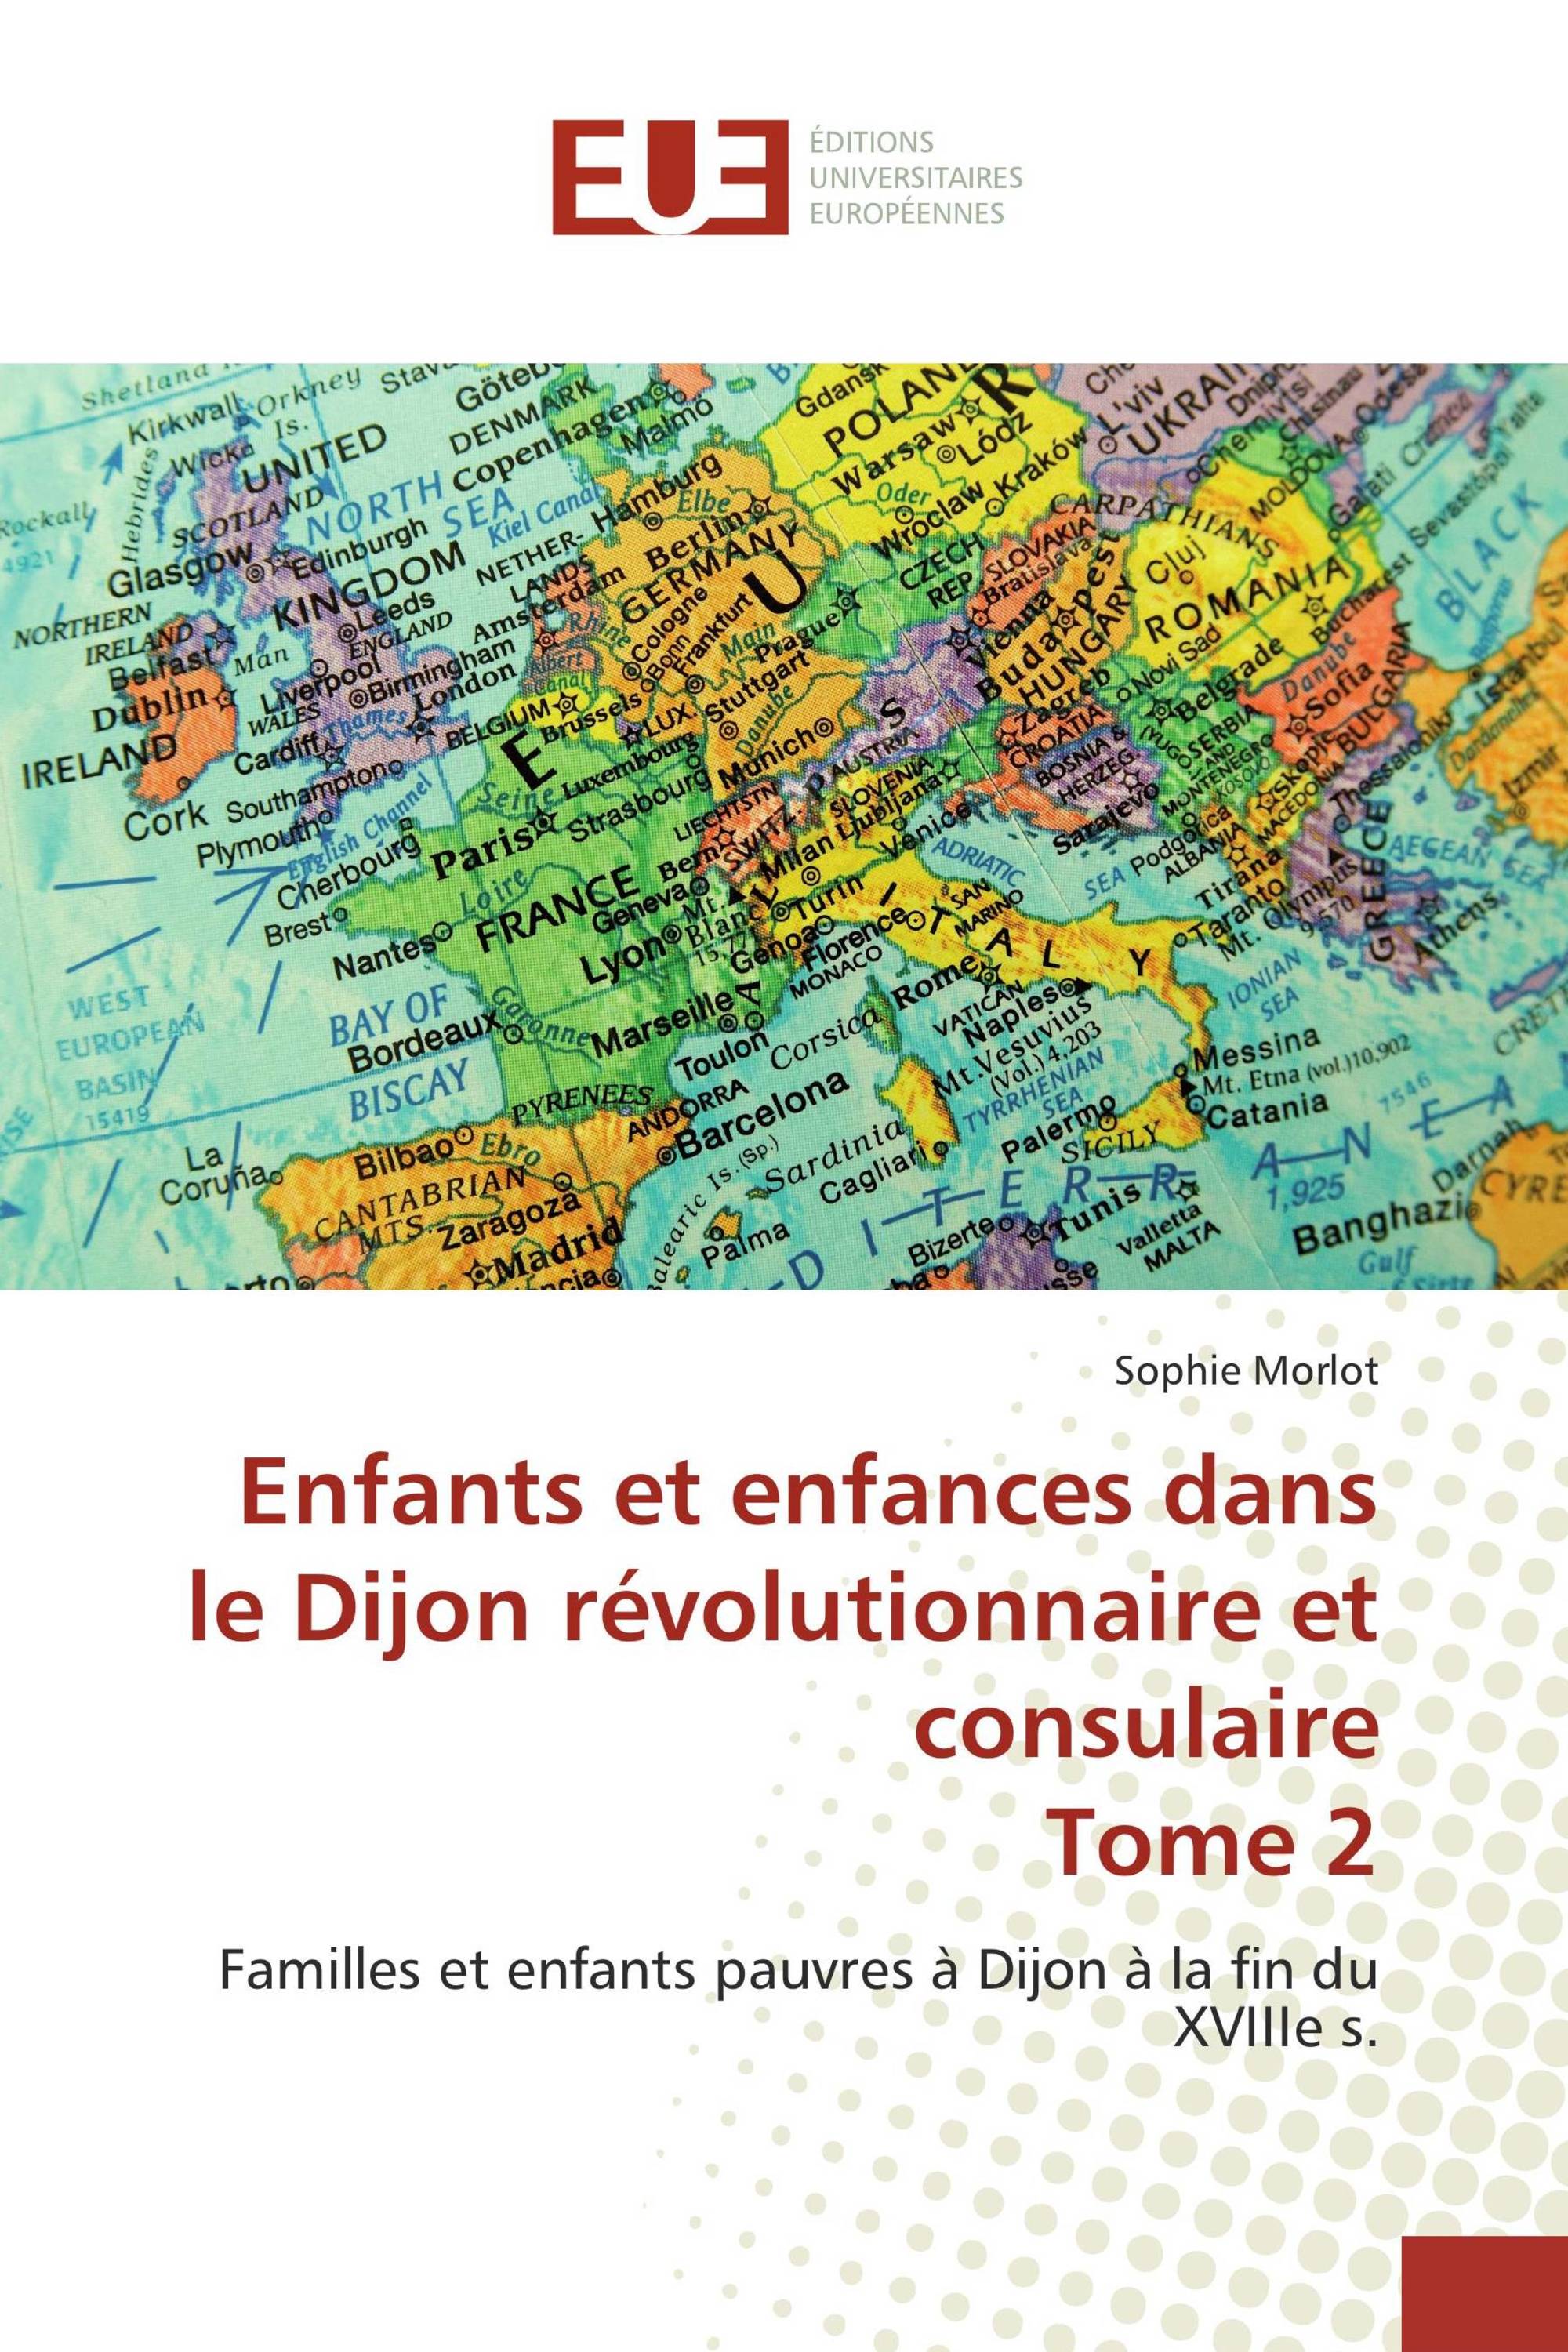 Enfants et enfances dans le Dijon révolutionnaire et consulaire Tome 2